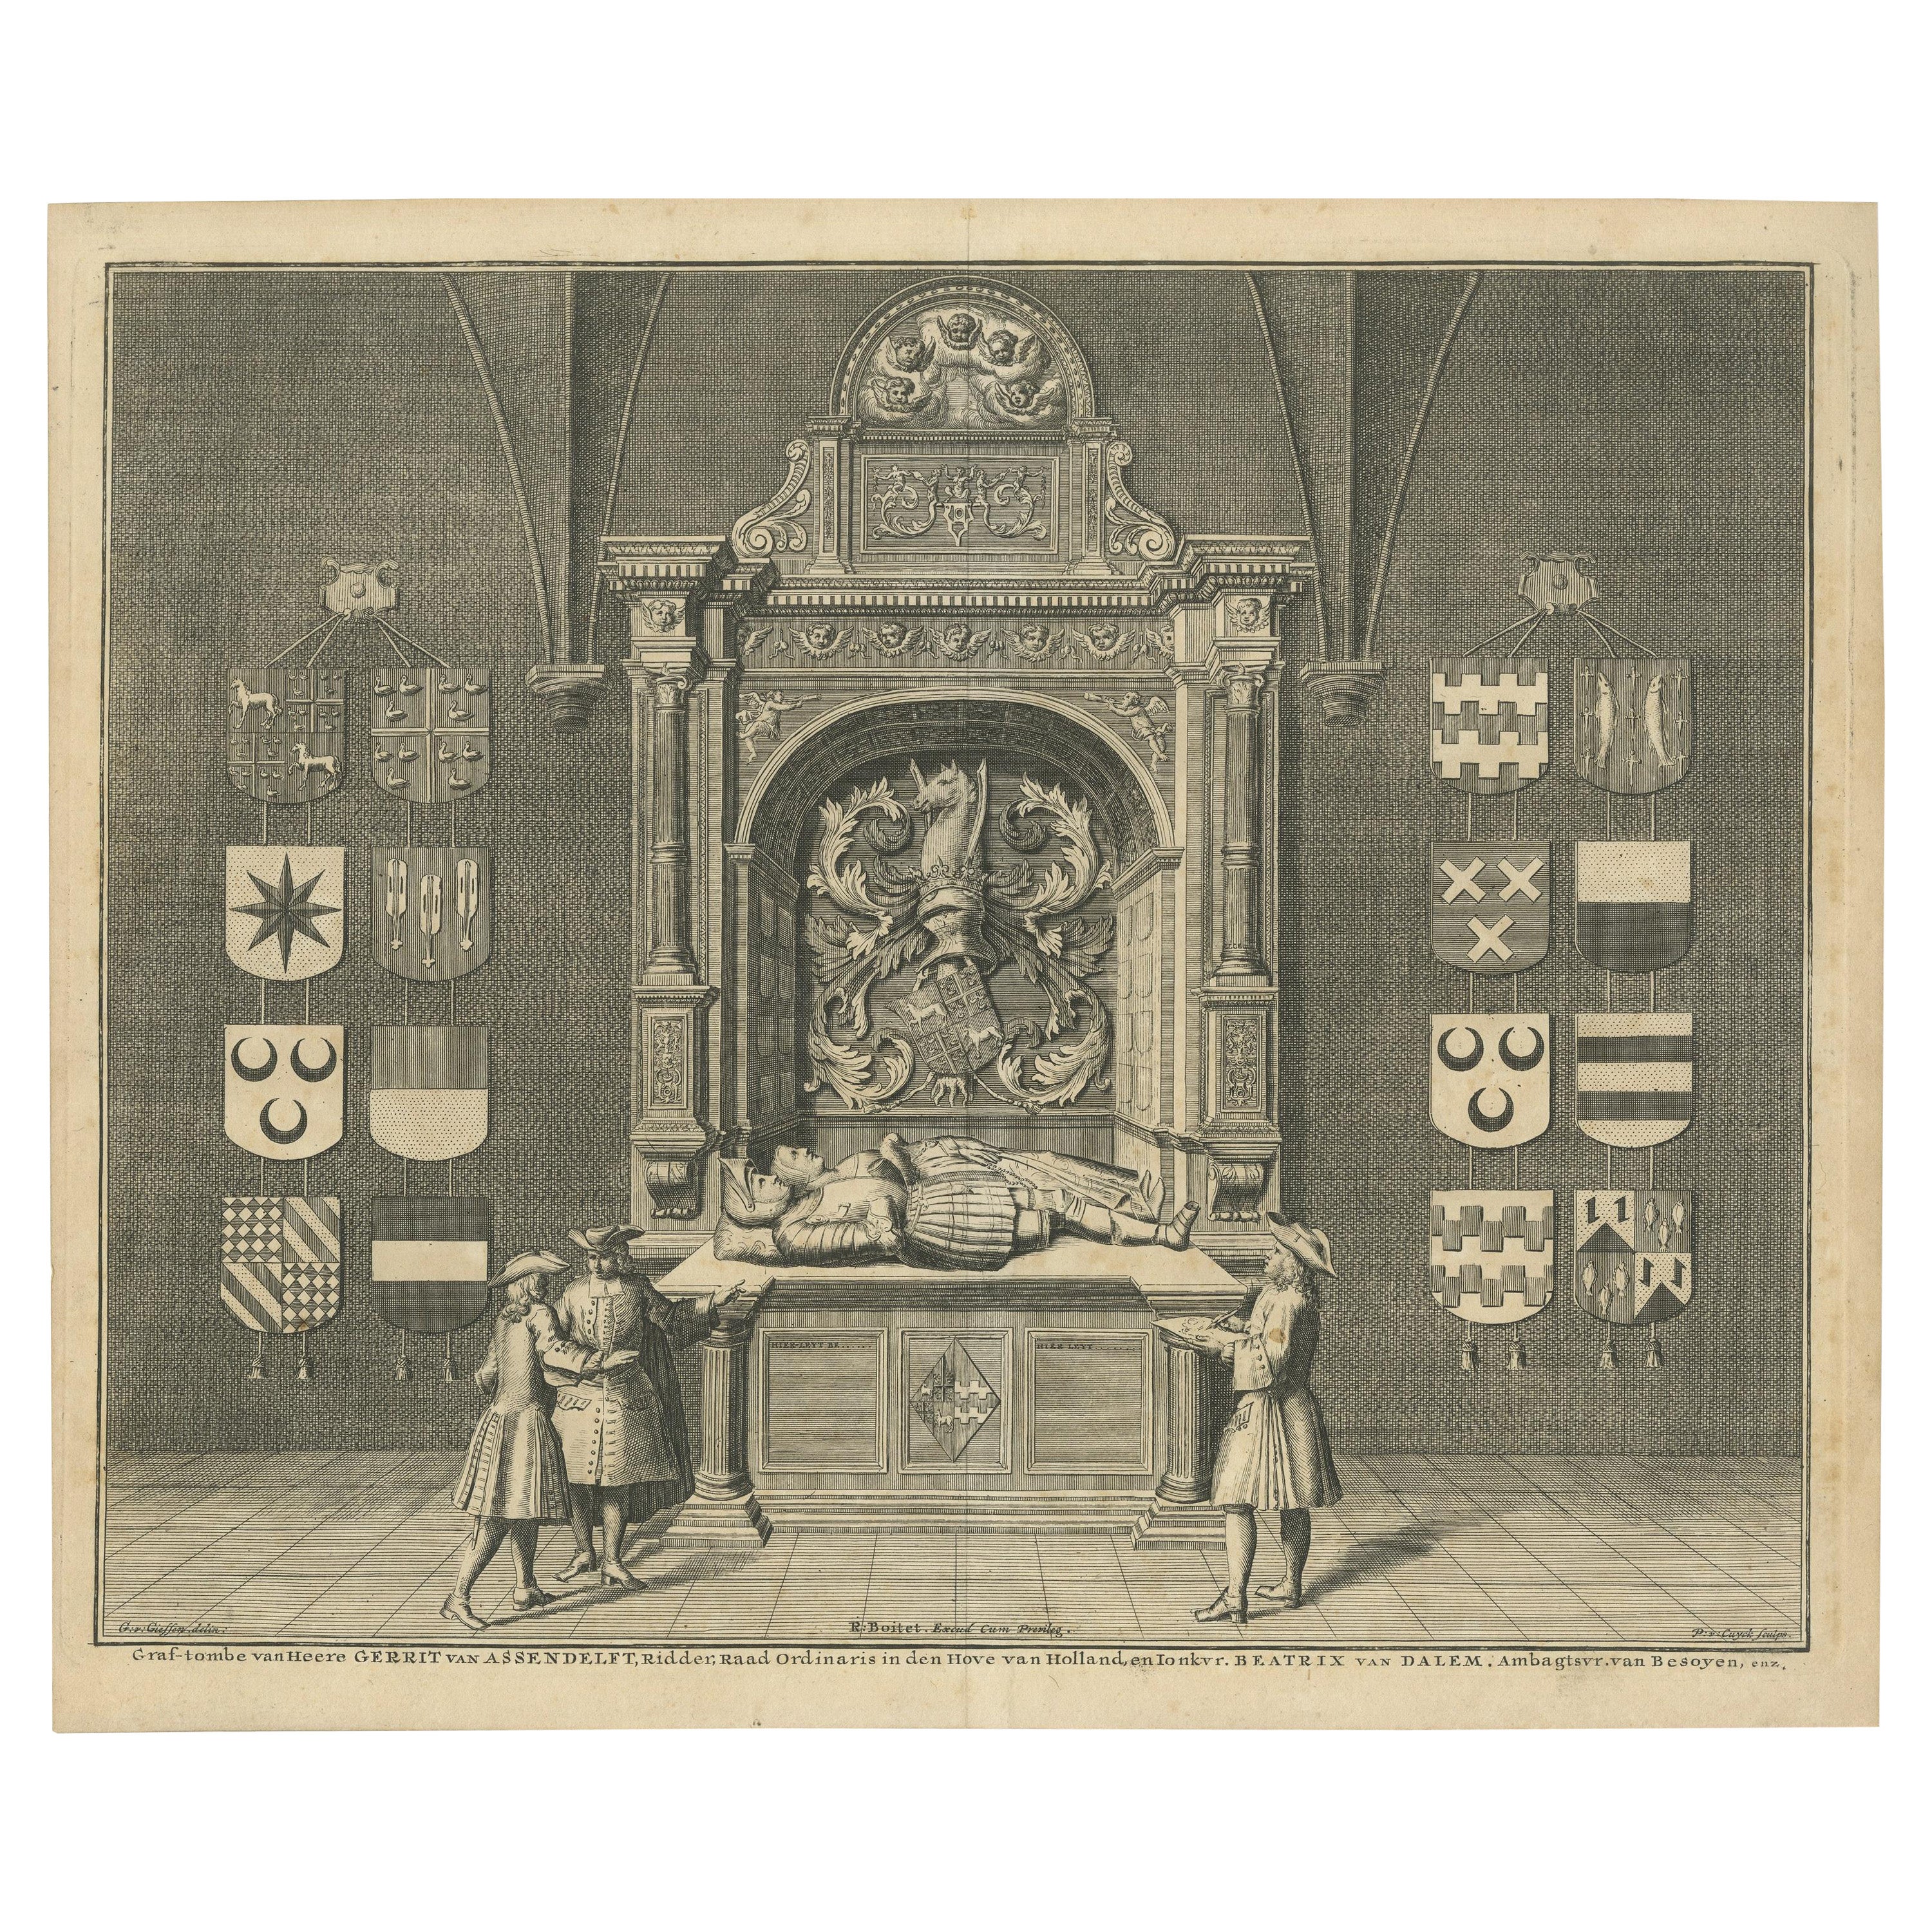 Antique Print of the Tomb of Gerrit van Assendelft and Beatrix van Dalem